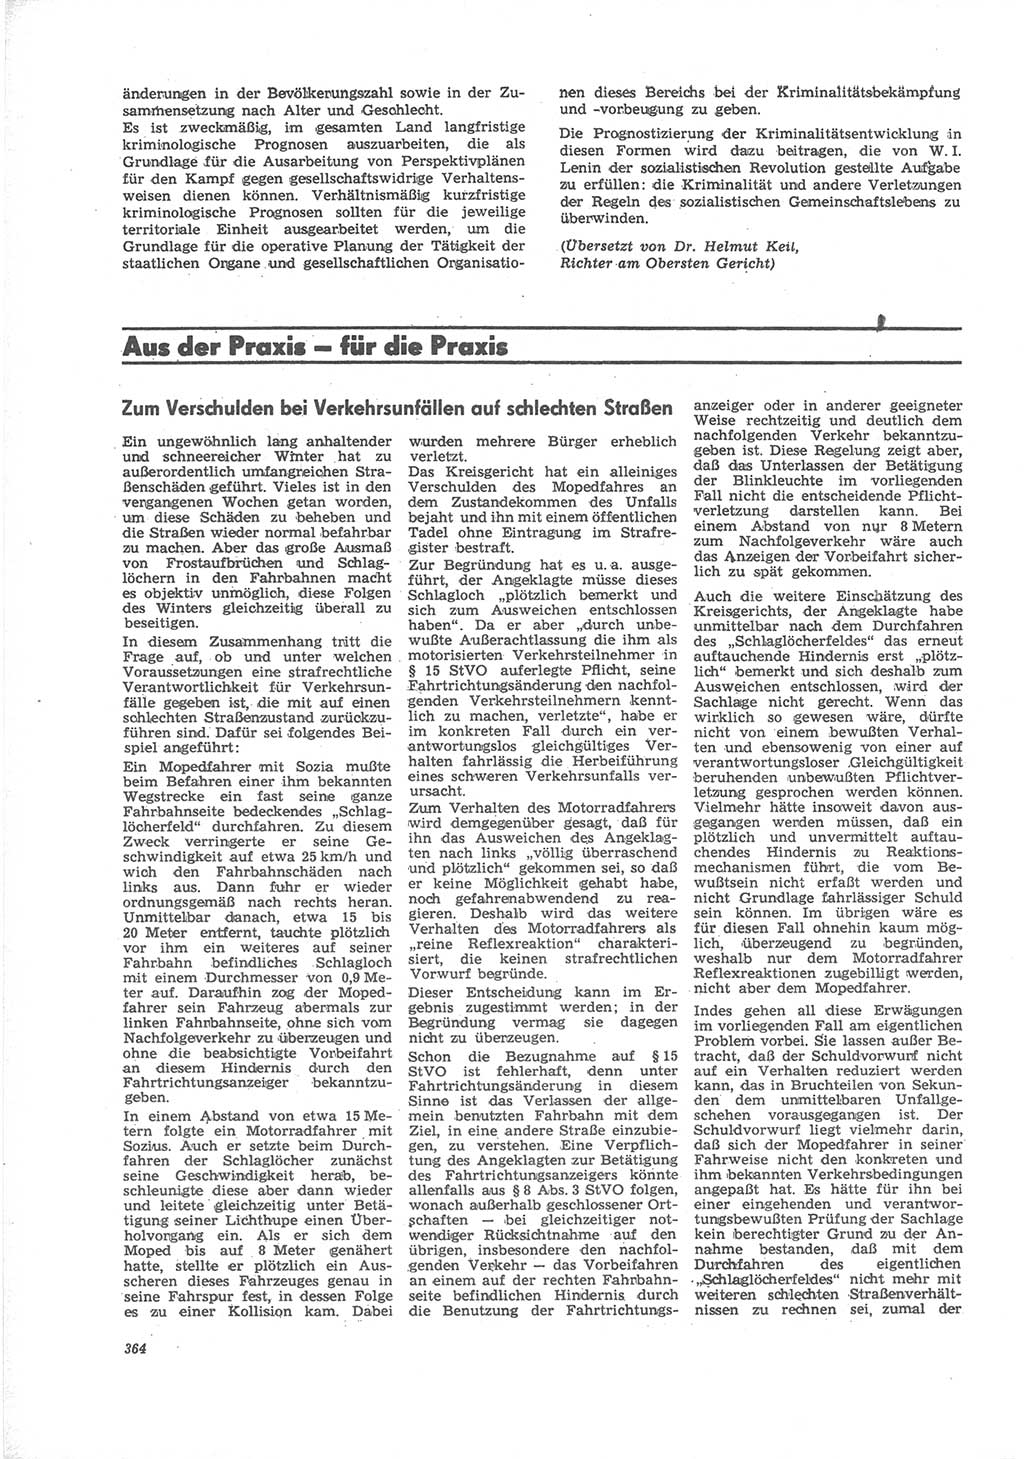 Neue Justiz (NJ), Zeitschrift für Recht und Rechtswissenschaft [Deutsche Demokratische Republik (DDR)], 24. Jahrgang 1970, Seite 364 (NJ DDR 1970, S. 364)